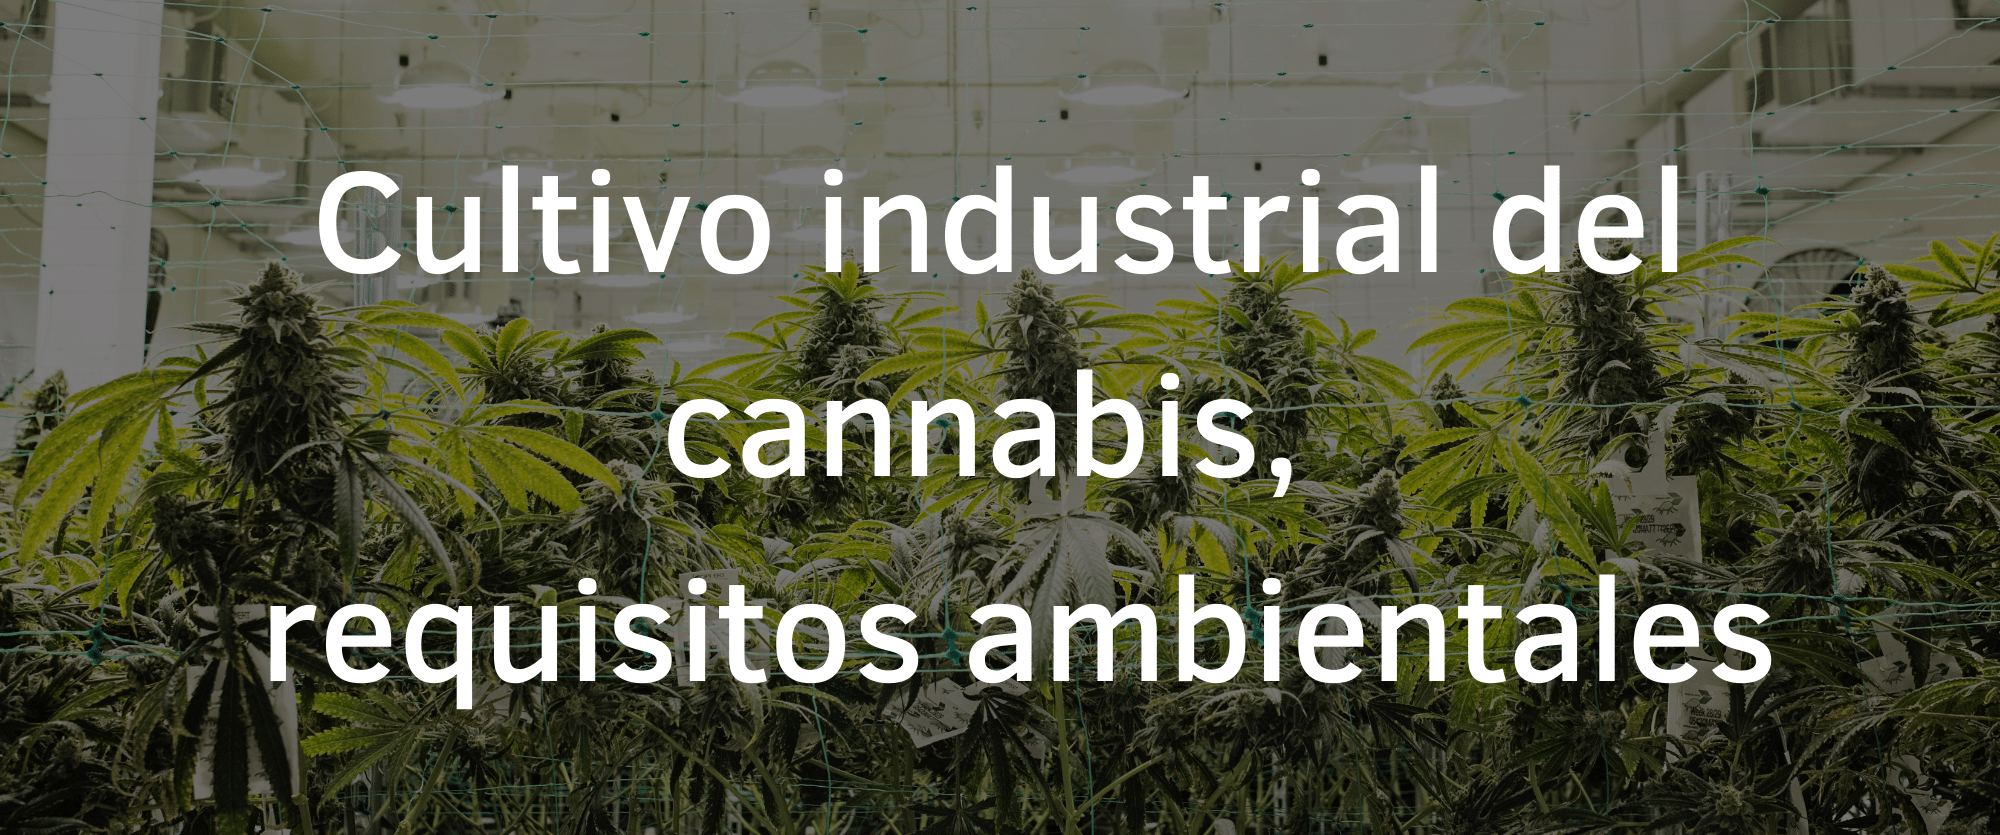 Cultivo industrial del cannabis y sus requisitos ambientales